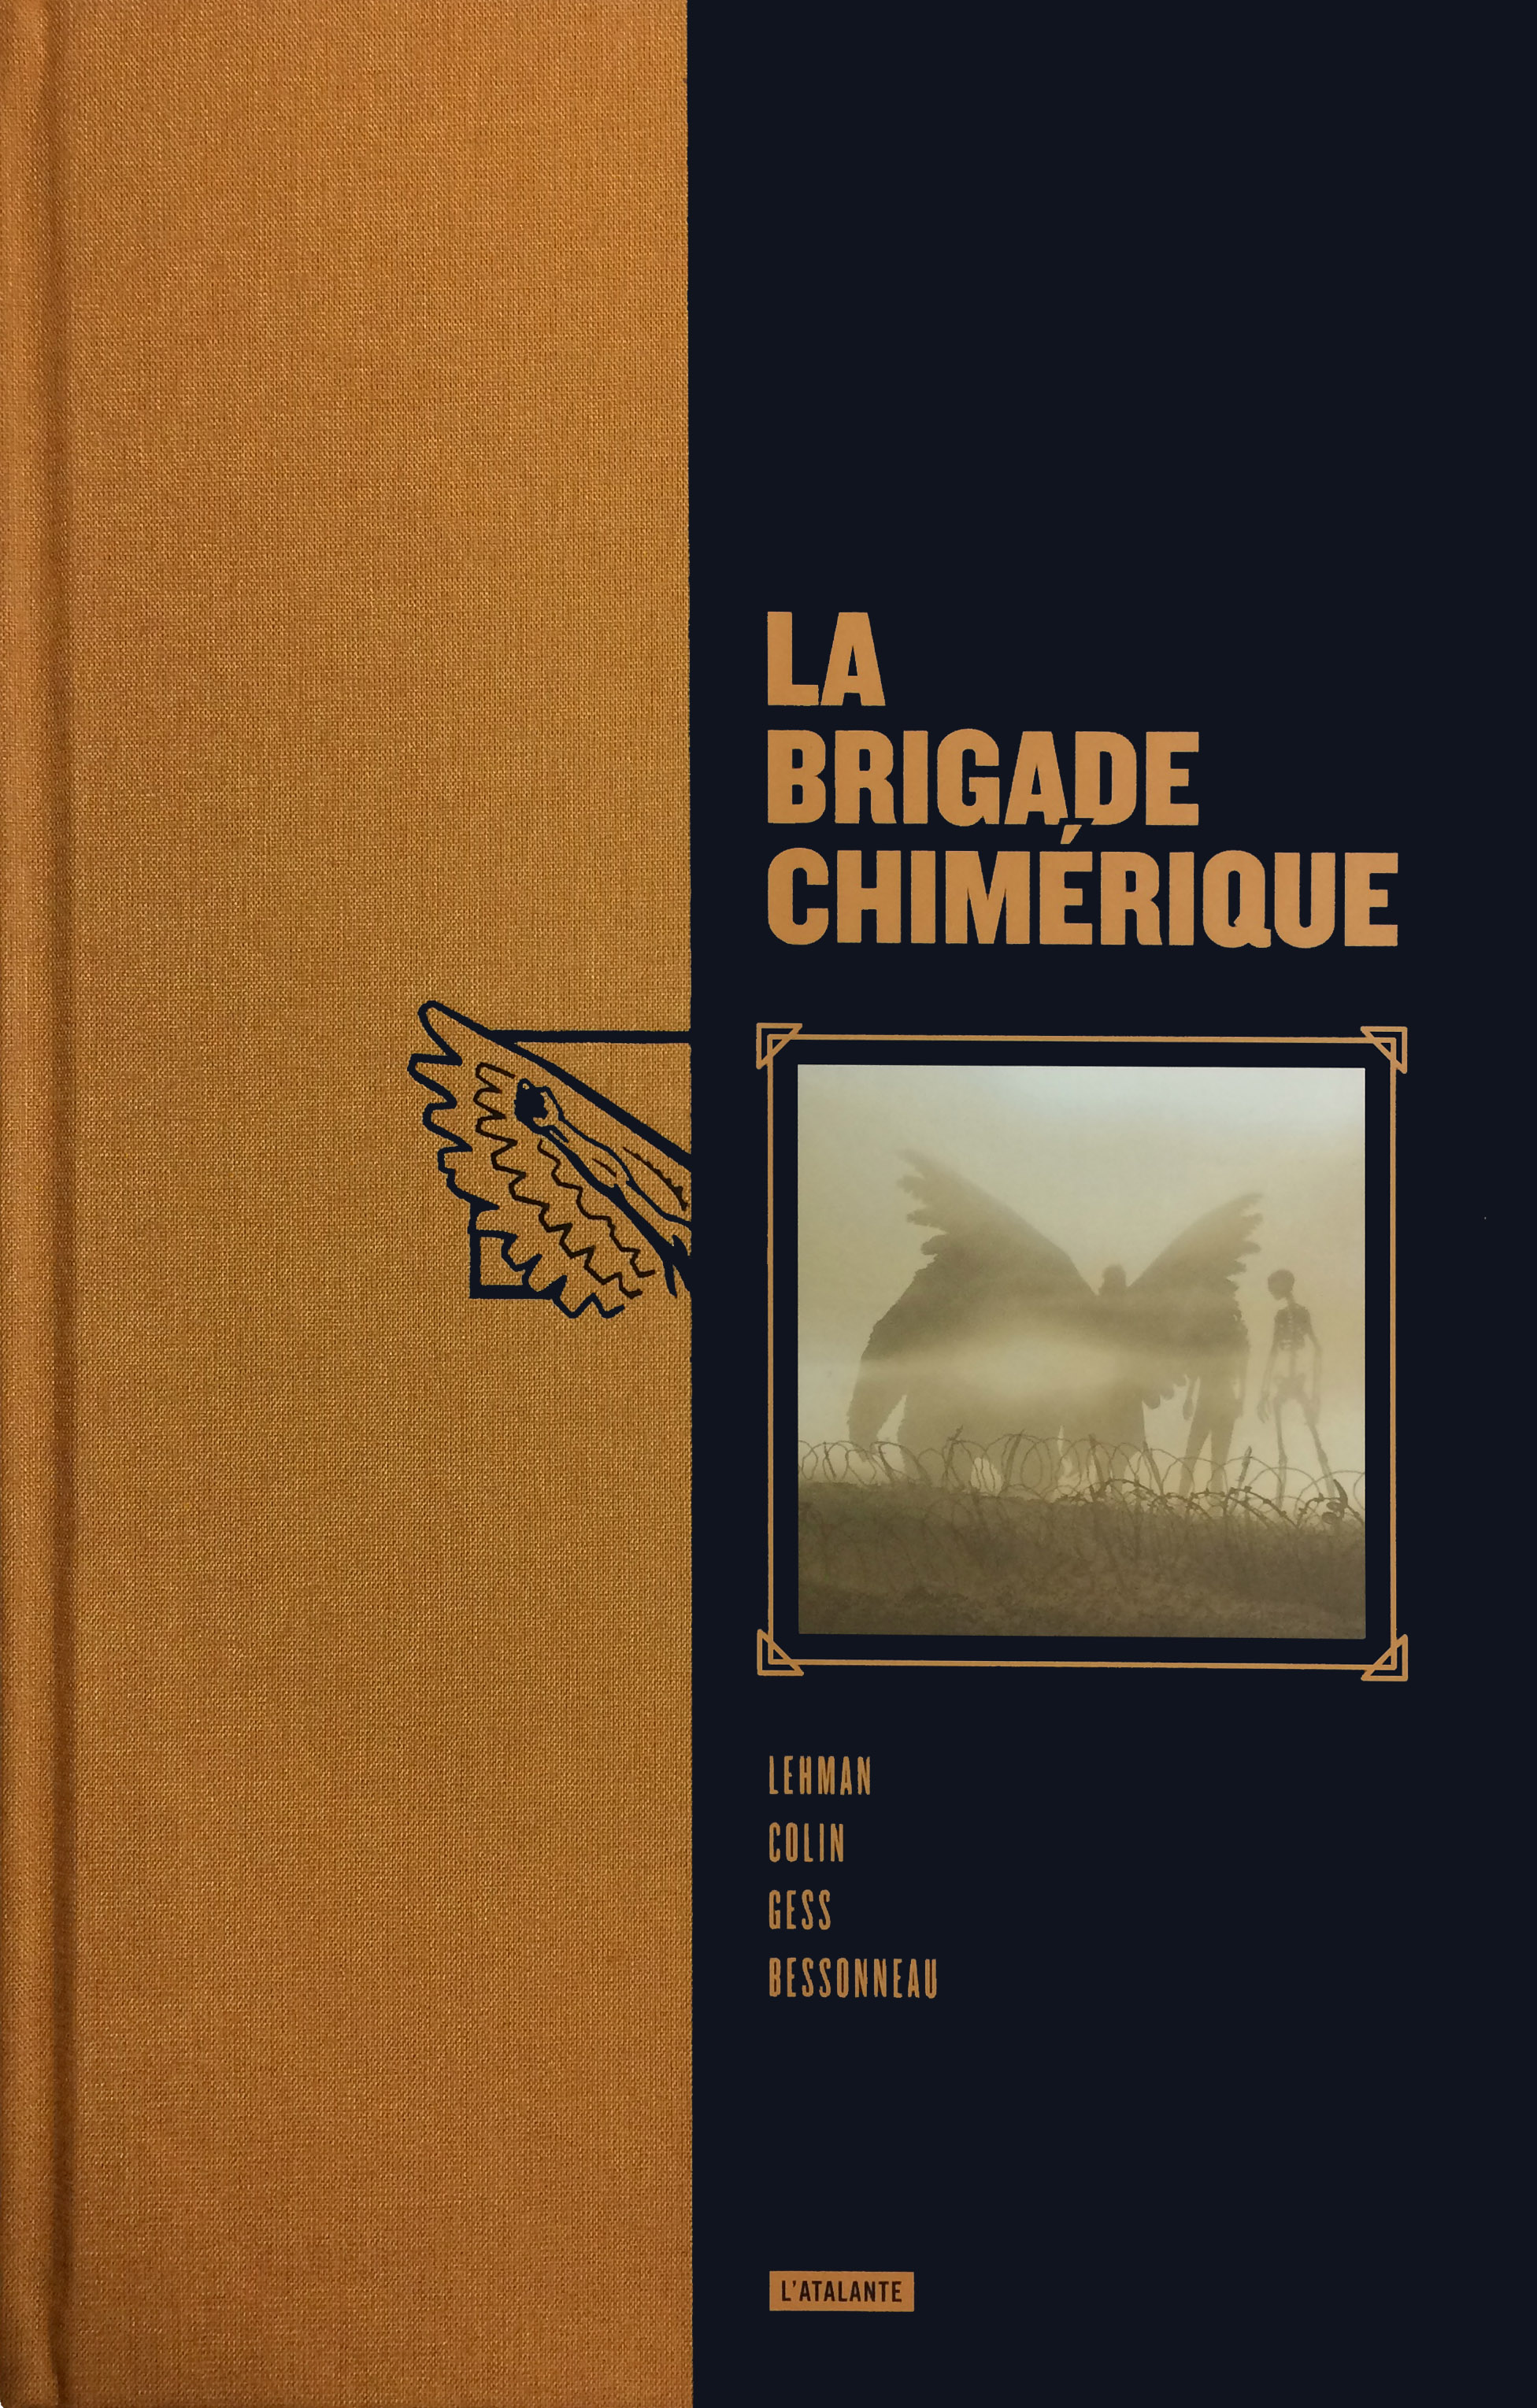 La Brigade Chimérique (Lehman, Colin, Gess et Bessonneau - Atalante)